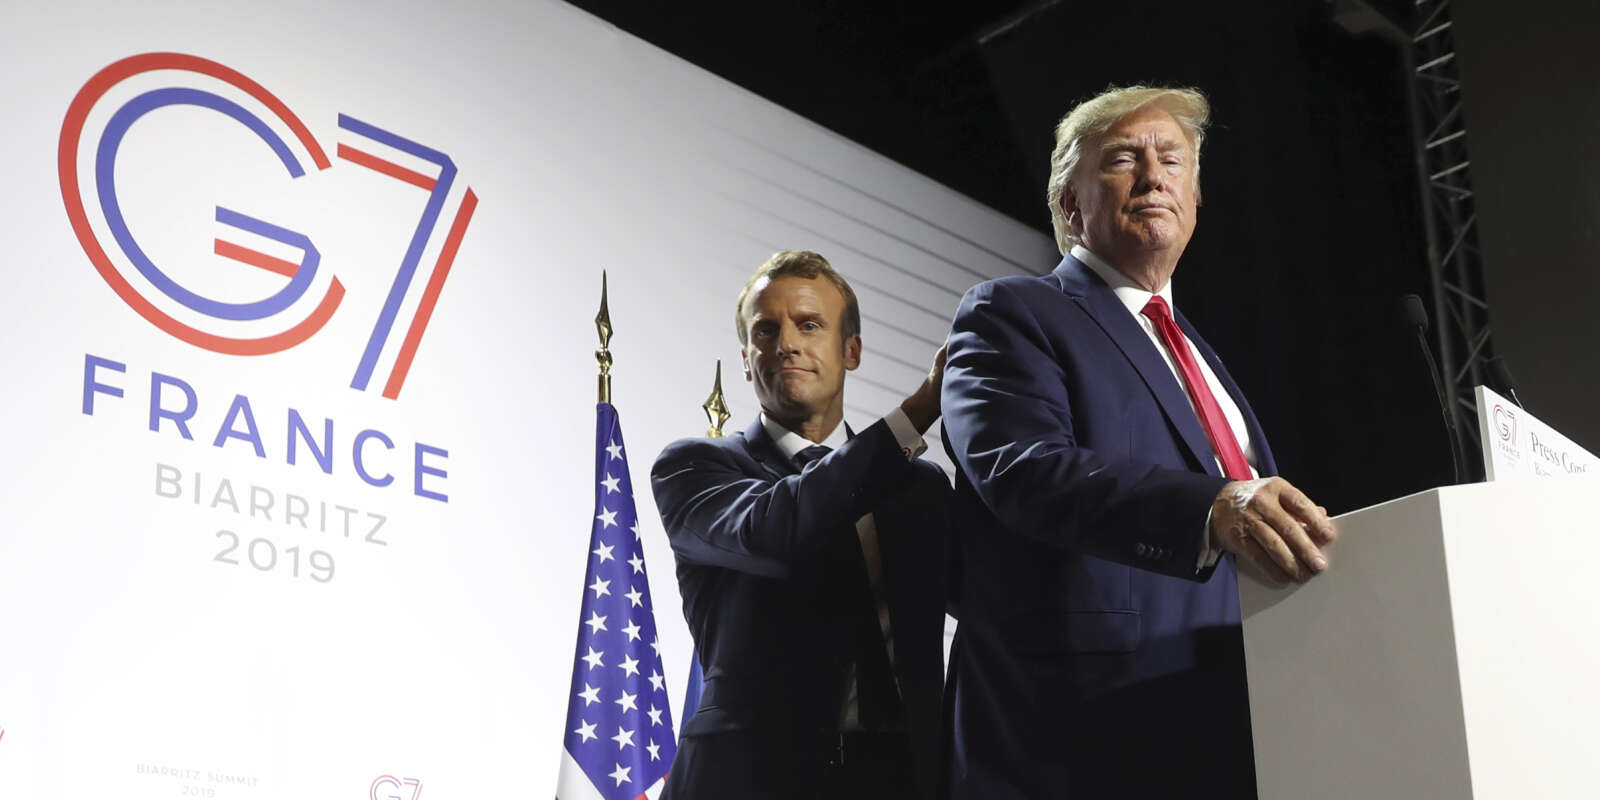 Emmanuel Macron et Donald Trump à la fin de leur conférence de presse commune à Biarritz, le 26 août.